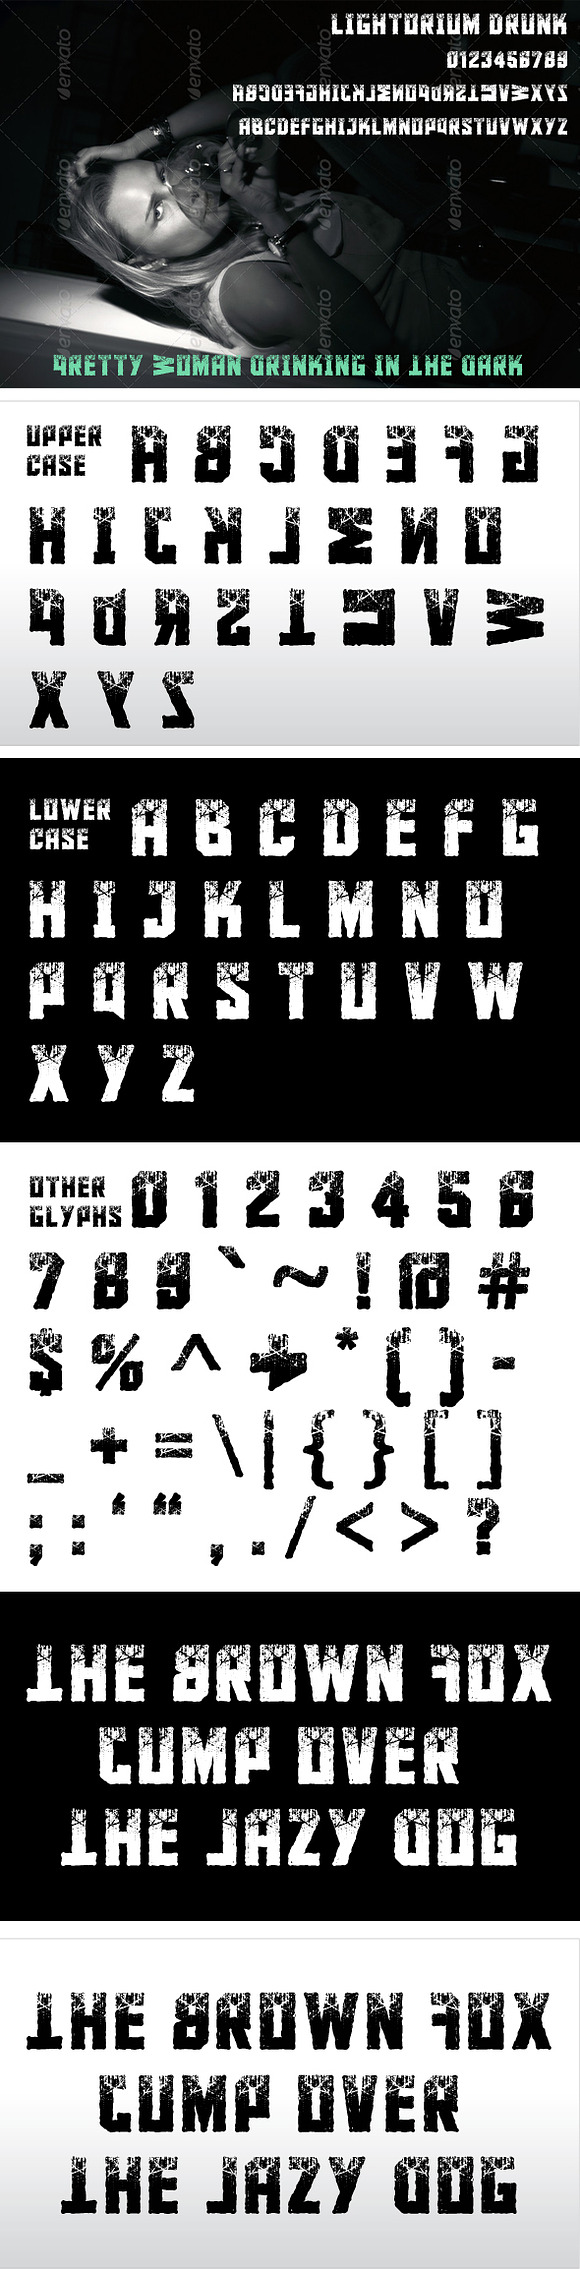 Lightorium Drunk in Sans-Serif Fonts - product preview 1